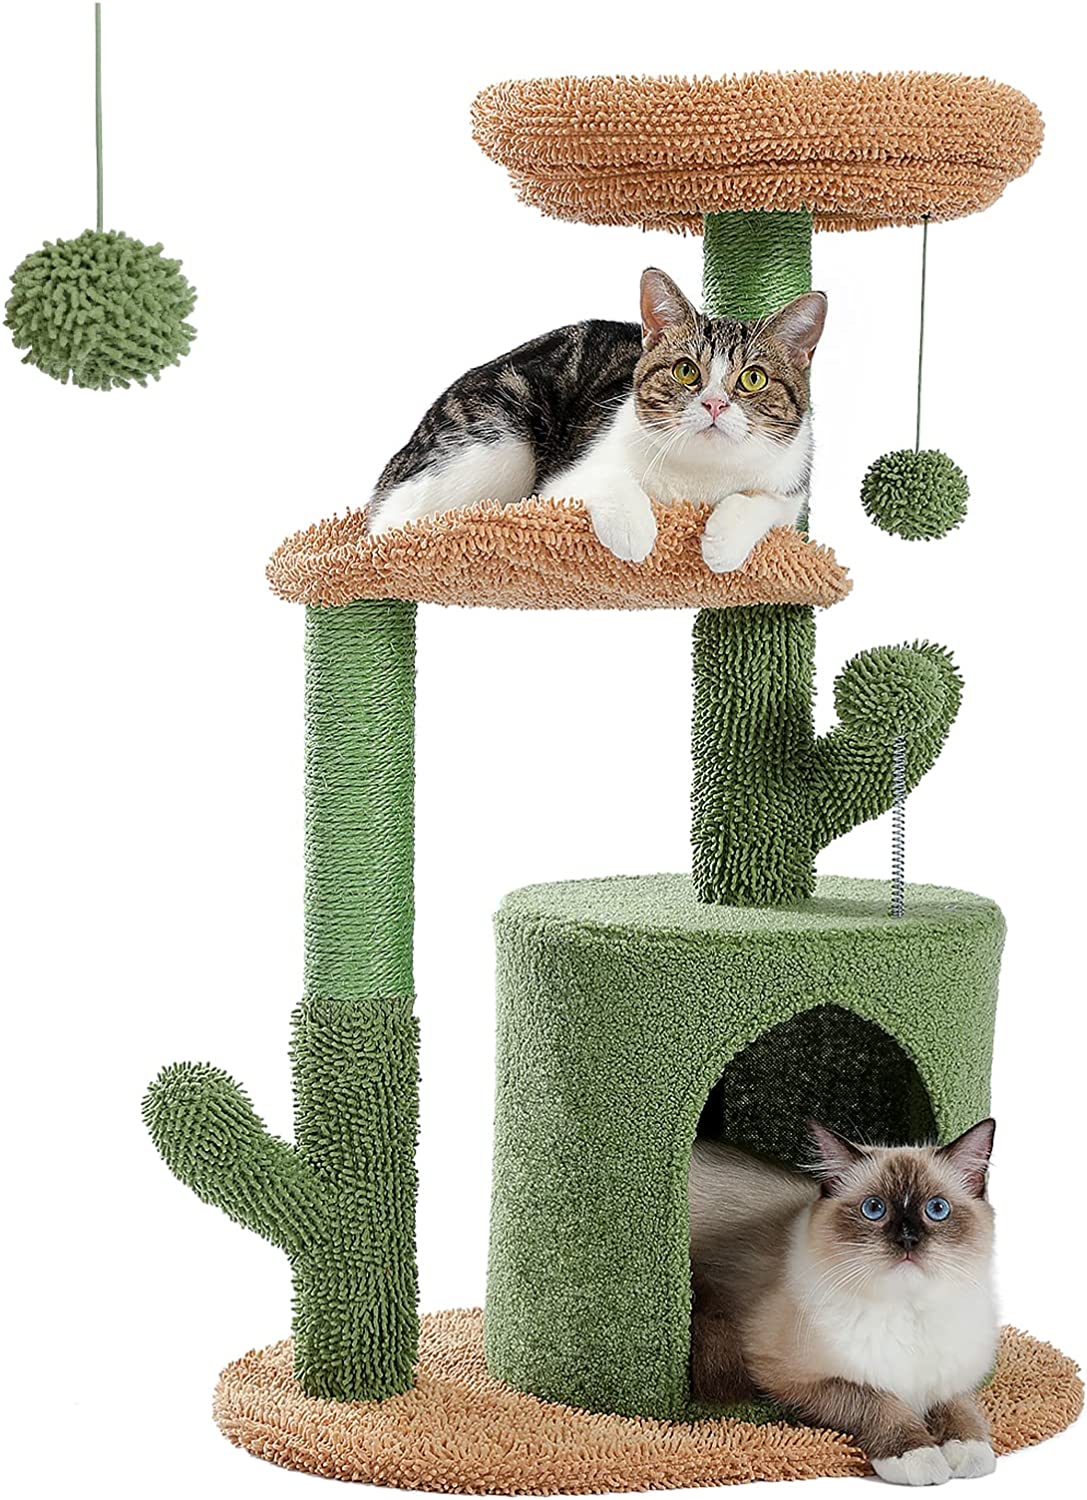 7. PAWZ Road Cat Cactus Cat Tower